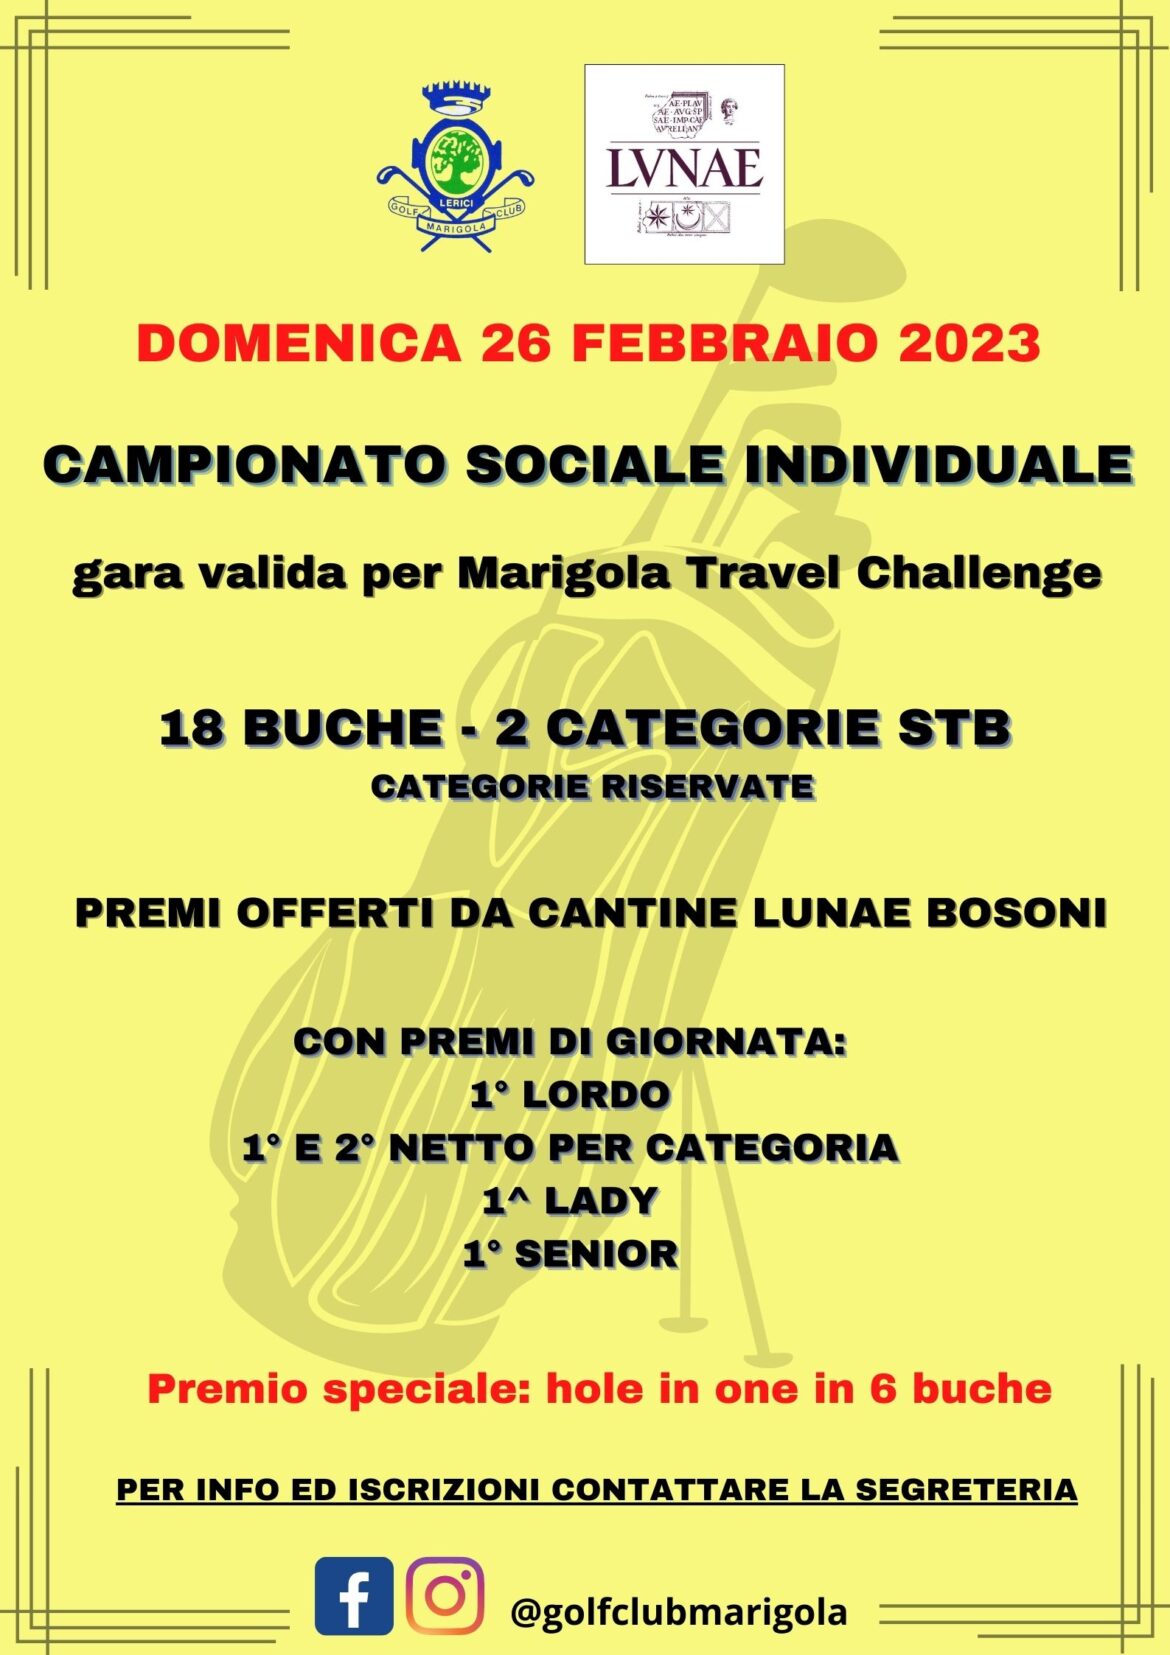 CAMPIONATO SOCIALE INDIVIDUALE – domenica 26 febbraio 2023 – GARA ANNULLATA